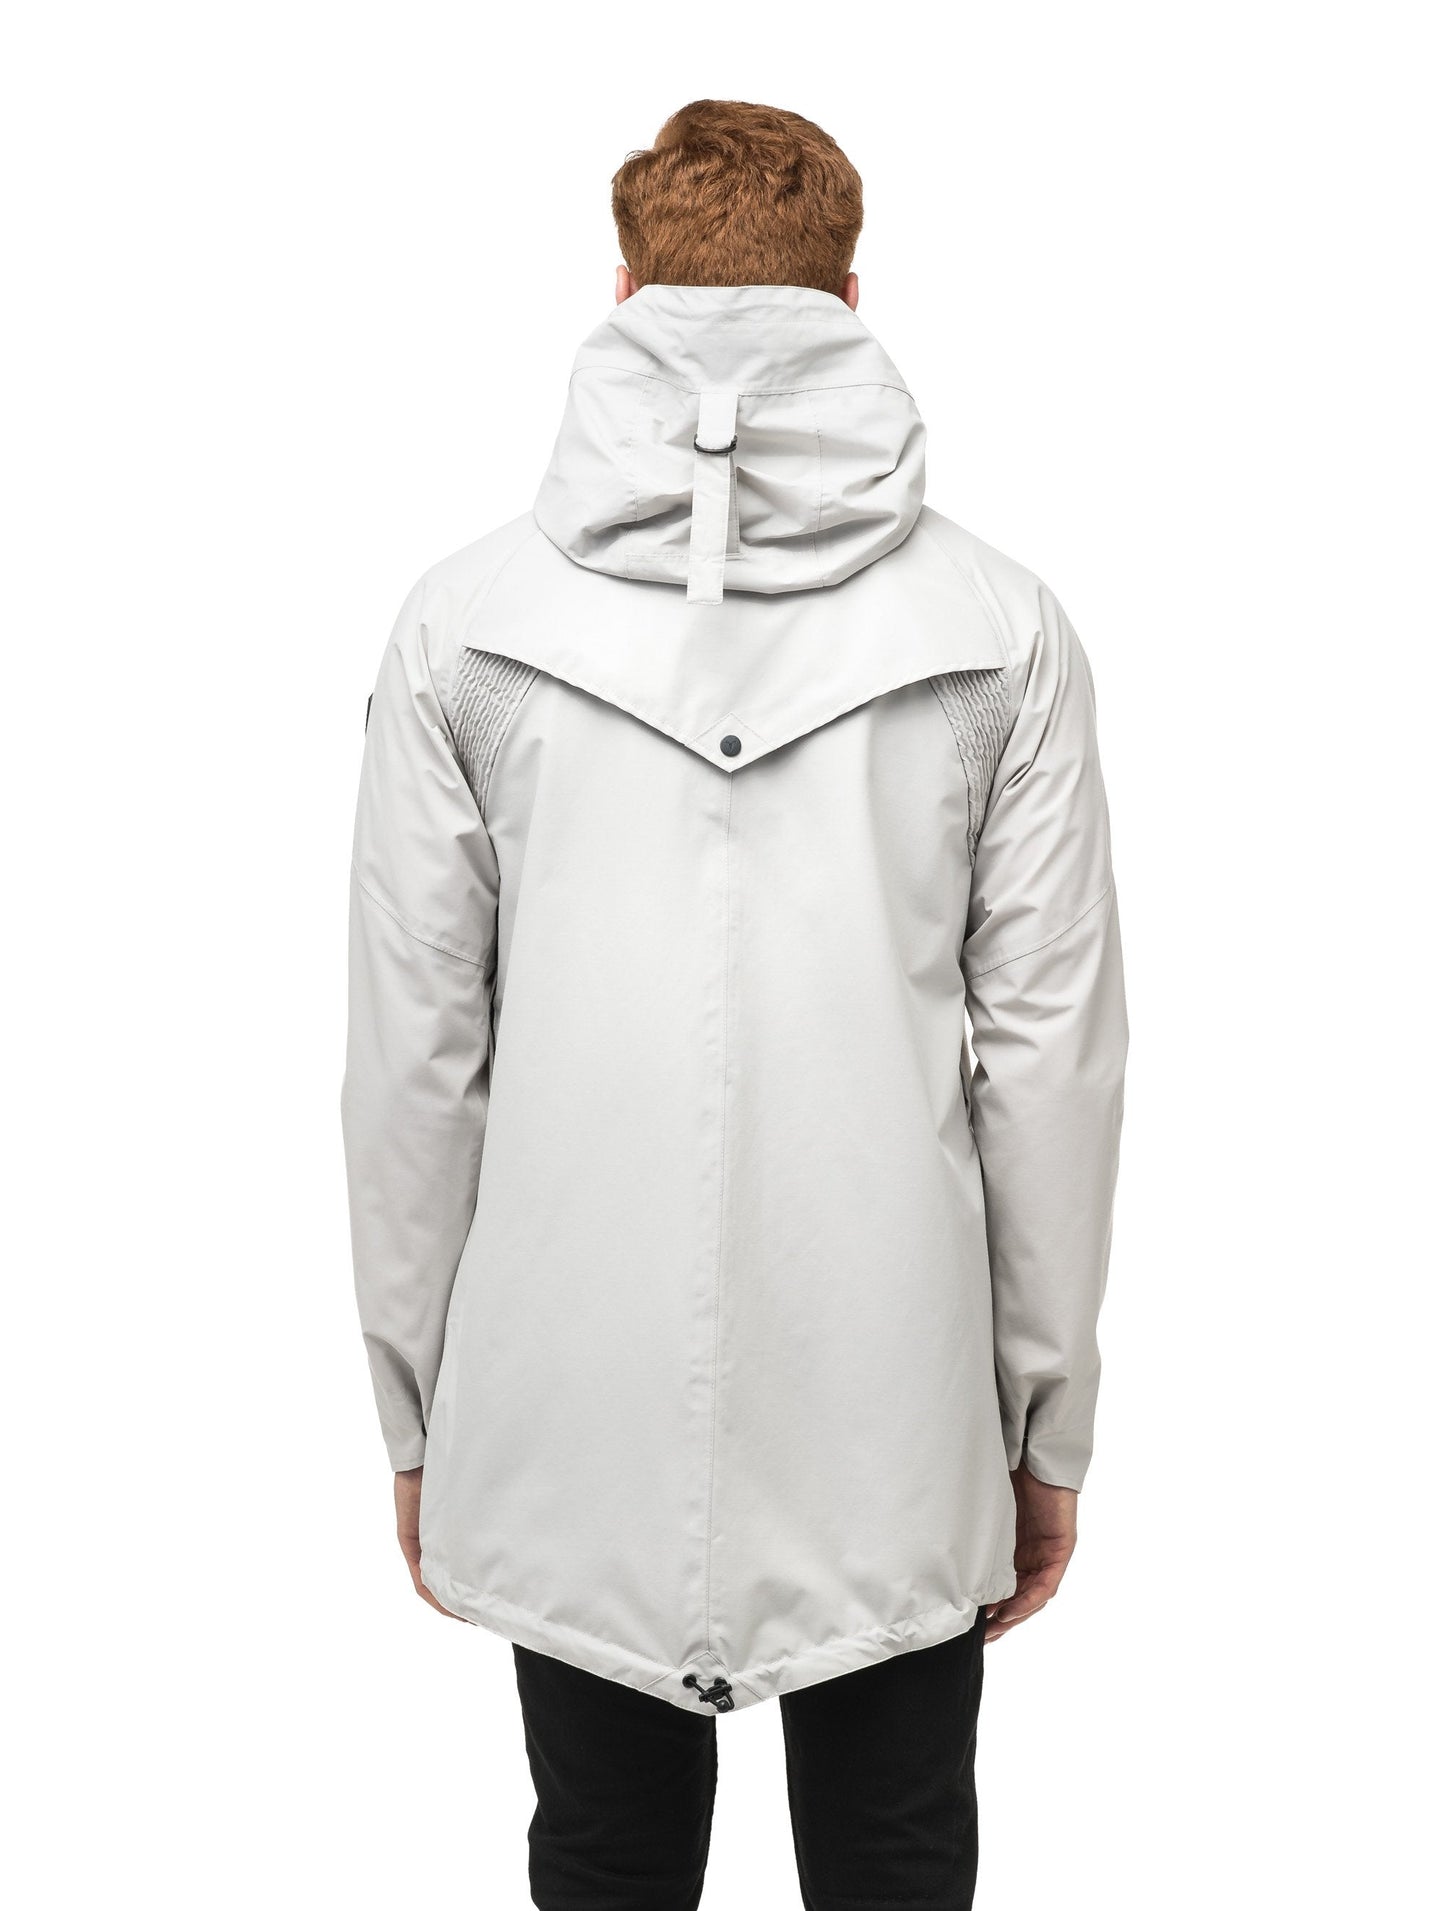 Men's hooded rain coat with hood in Light Grey